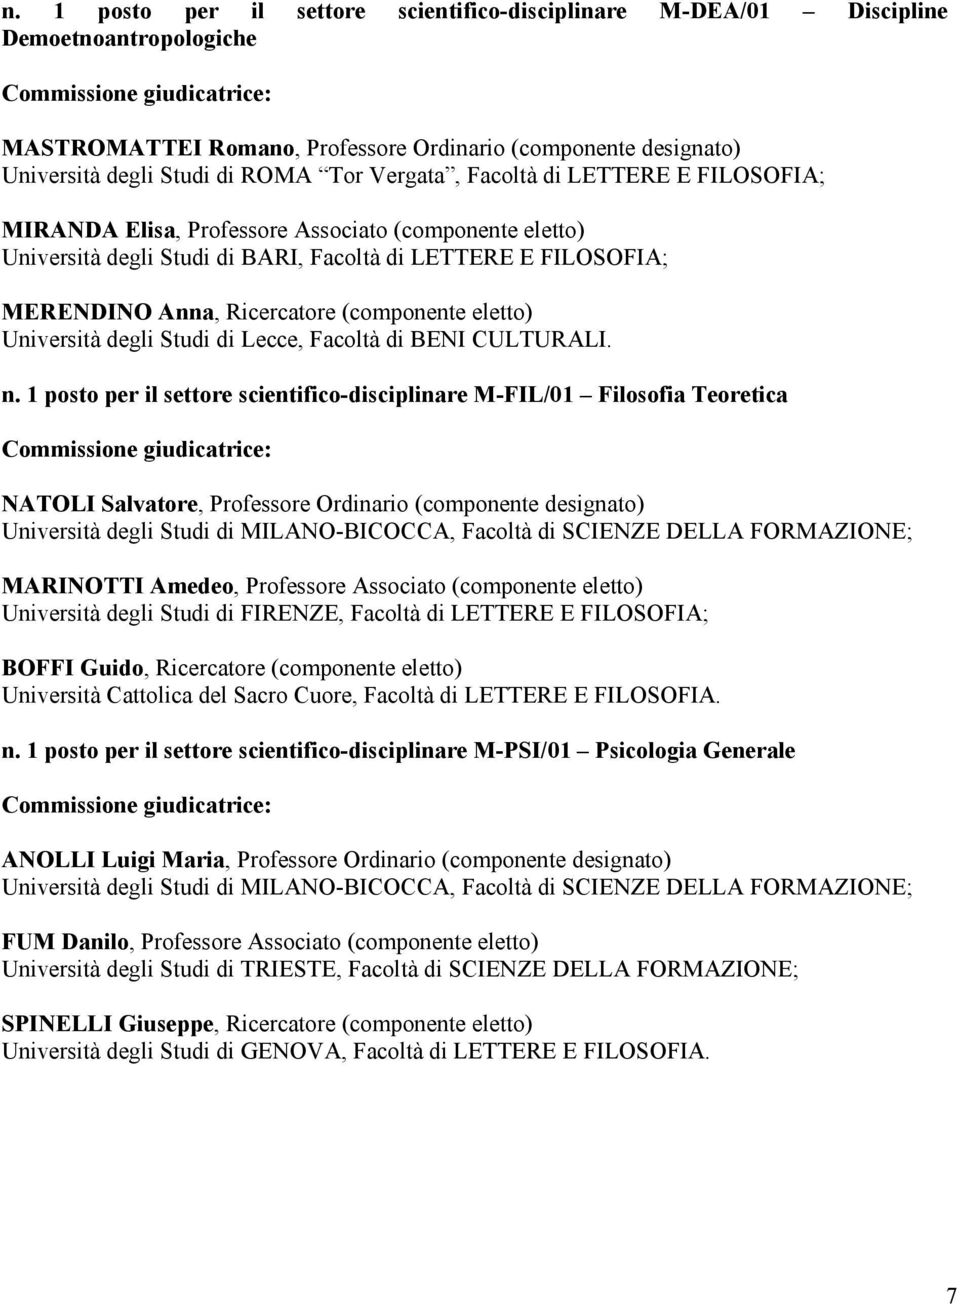 (componente eletto) Università degli Studi di Lecce, Facoltà di BENI CULTURALI. n.